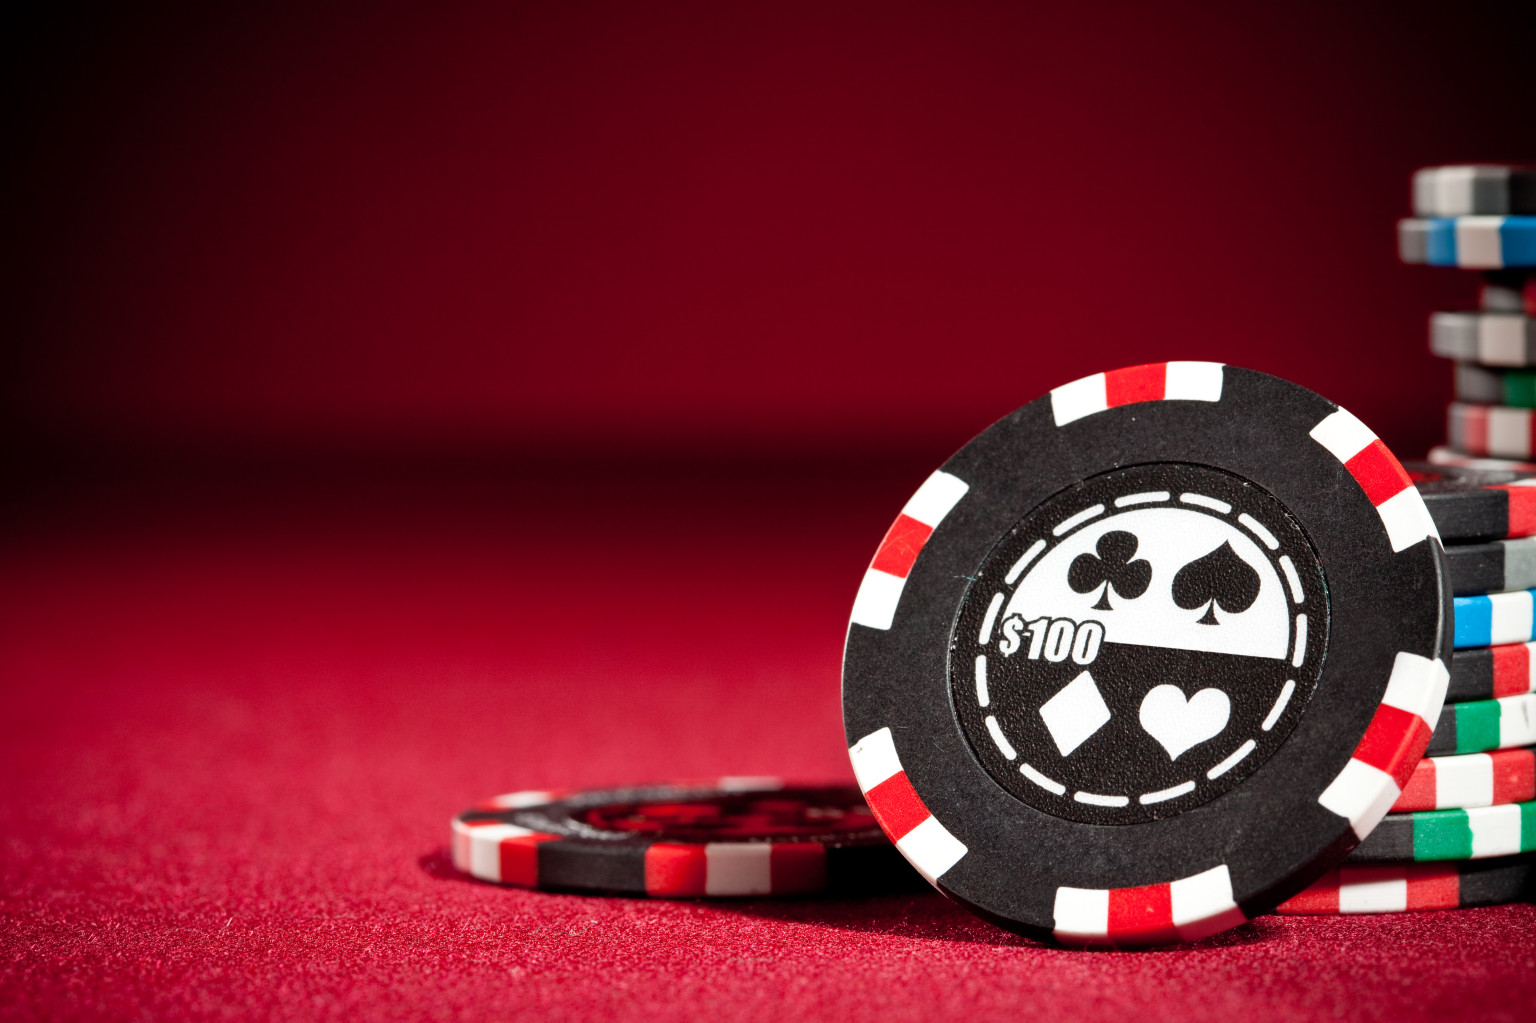 Casino online : existe-t-il des inconvénients ?